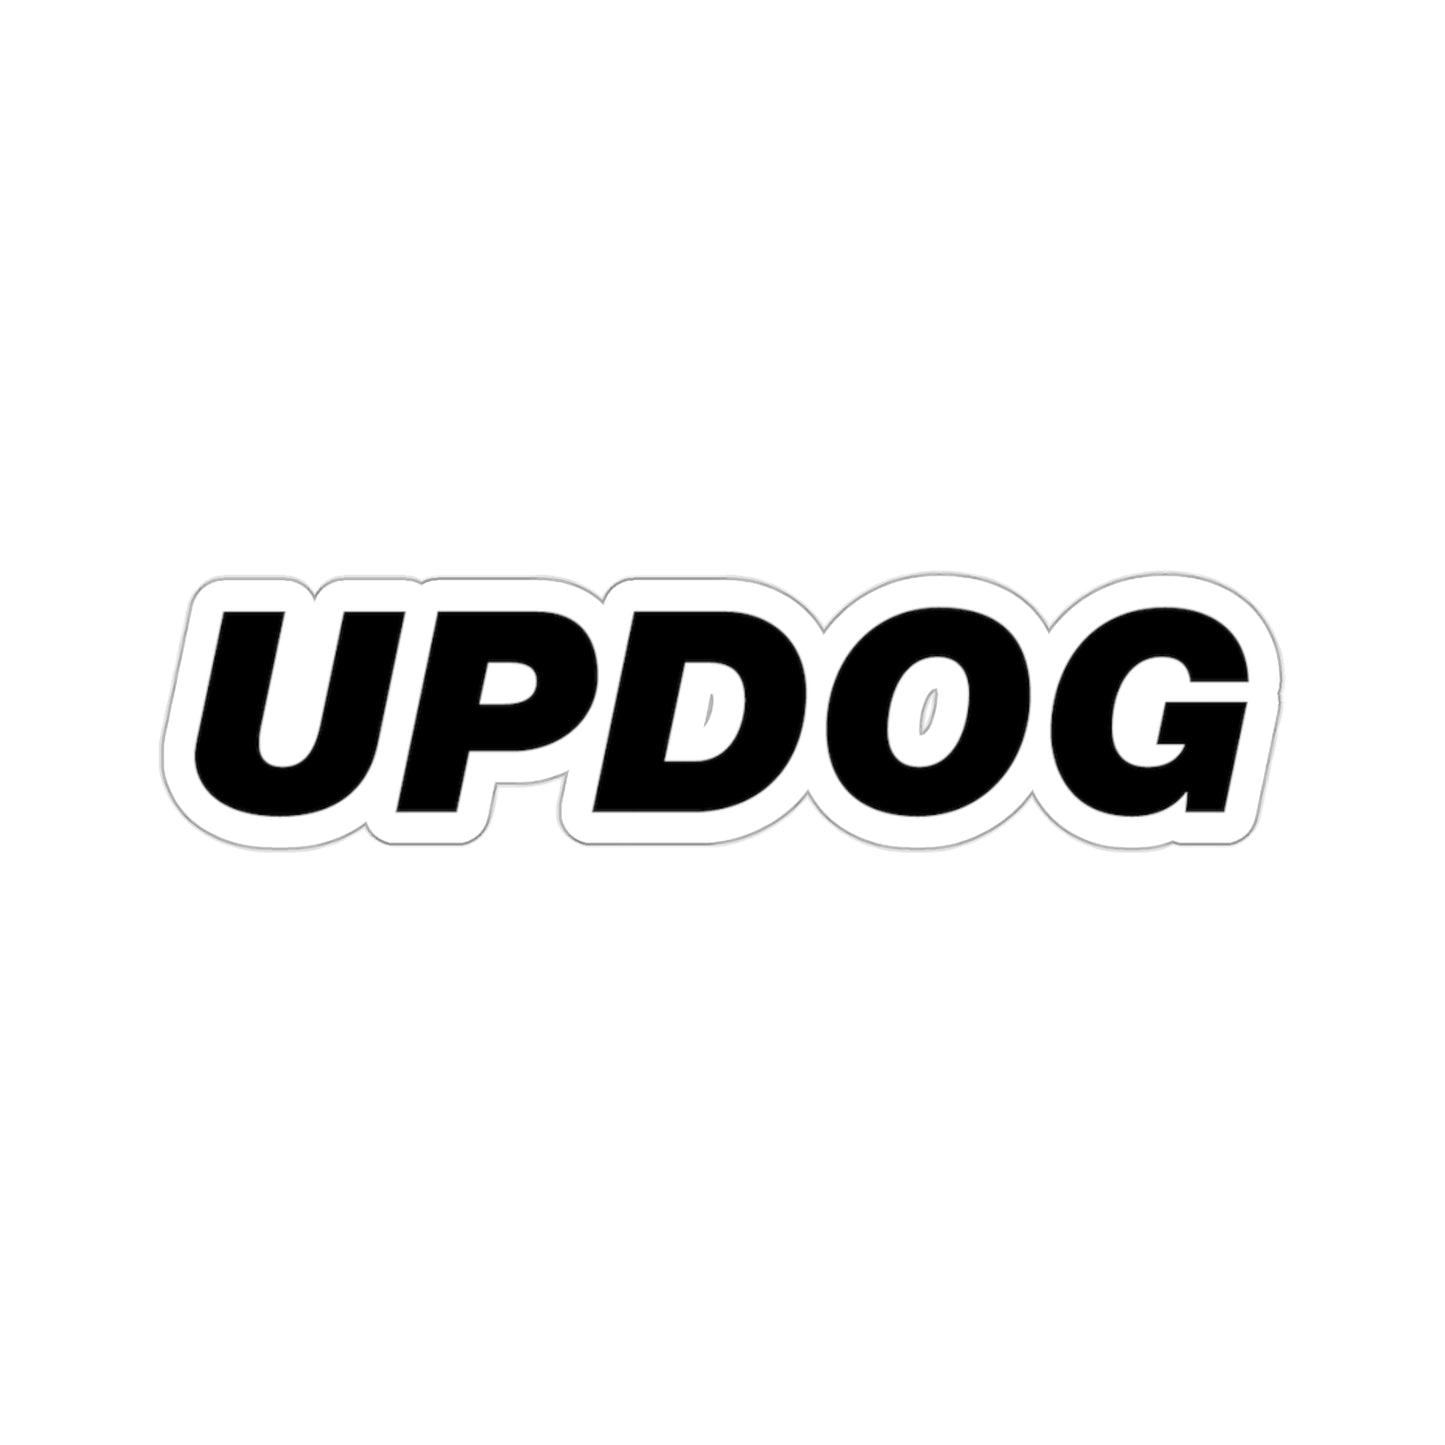 Updog, Funny Meme Sticker